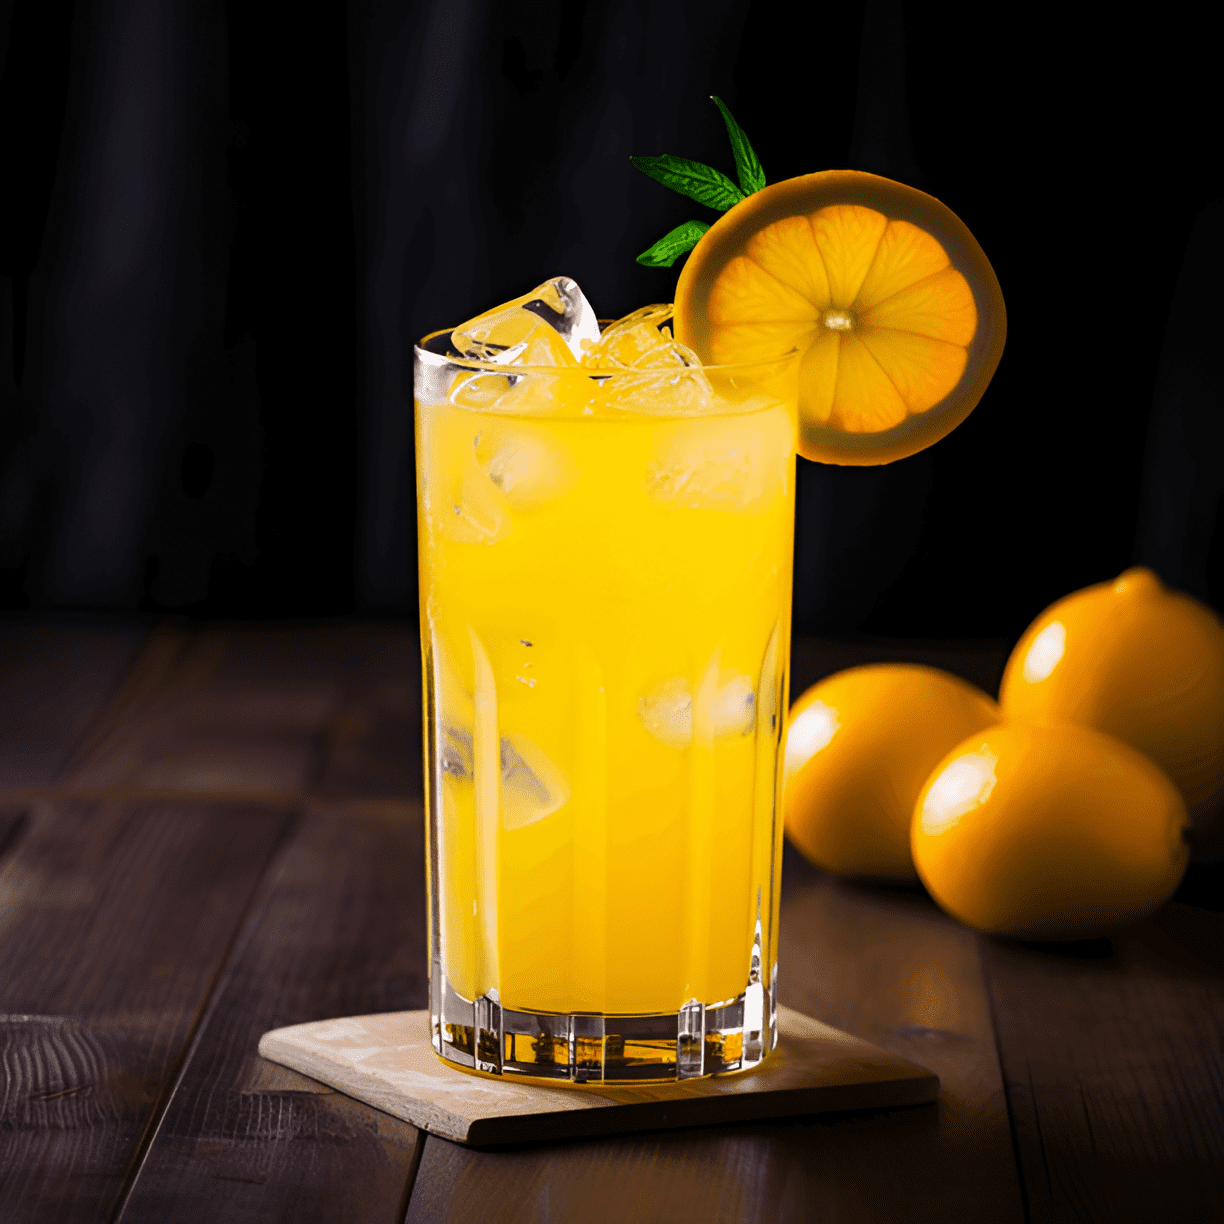 Screwdriver Cóctel Receta - El cóctel Screwdriver ofrece un perfil de sabor brillante, cítrico y ligeramente dulce. La suavidad del vodka se complementa con el sabor refrescante y ácido del jugo de naranja, lo que lo convierte en un cóctel equilibrado y fácil de beber.